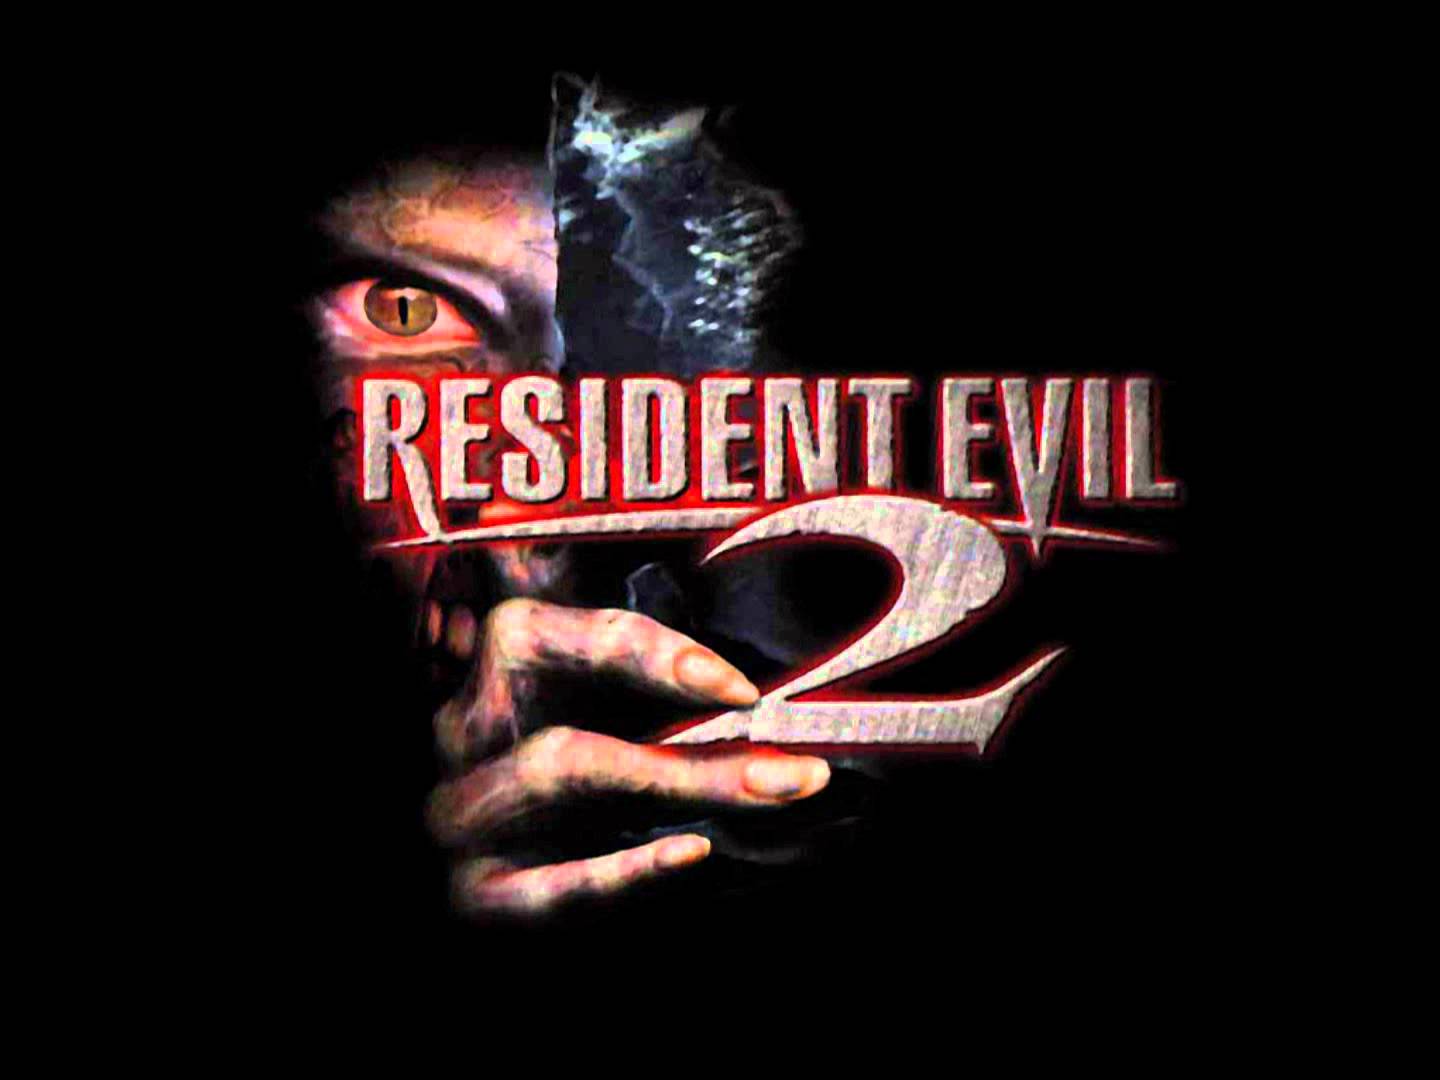 Resident Evil 2 Leon ps1 Cover. Resident Evil 2 игра 1998 обложка. Resident Evil 2 Remake обложка. Resident Evil OST. Resident evil саундтреки